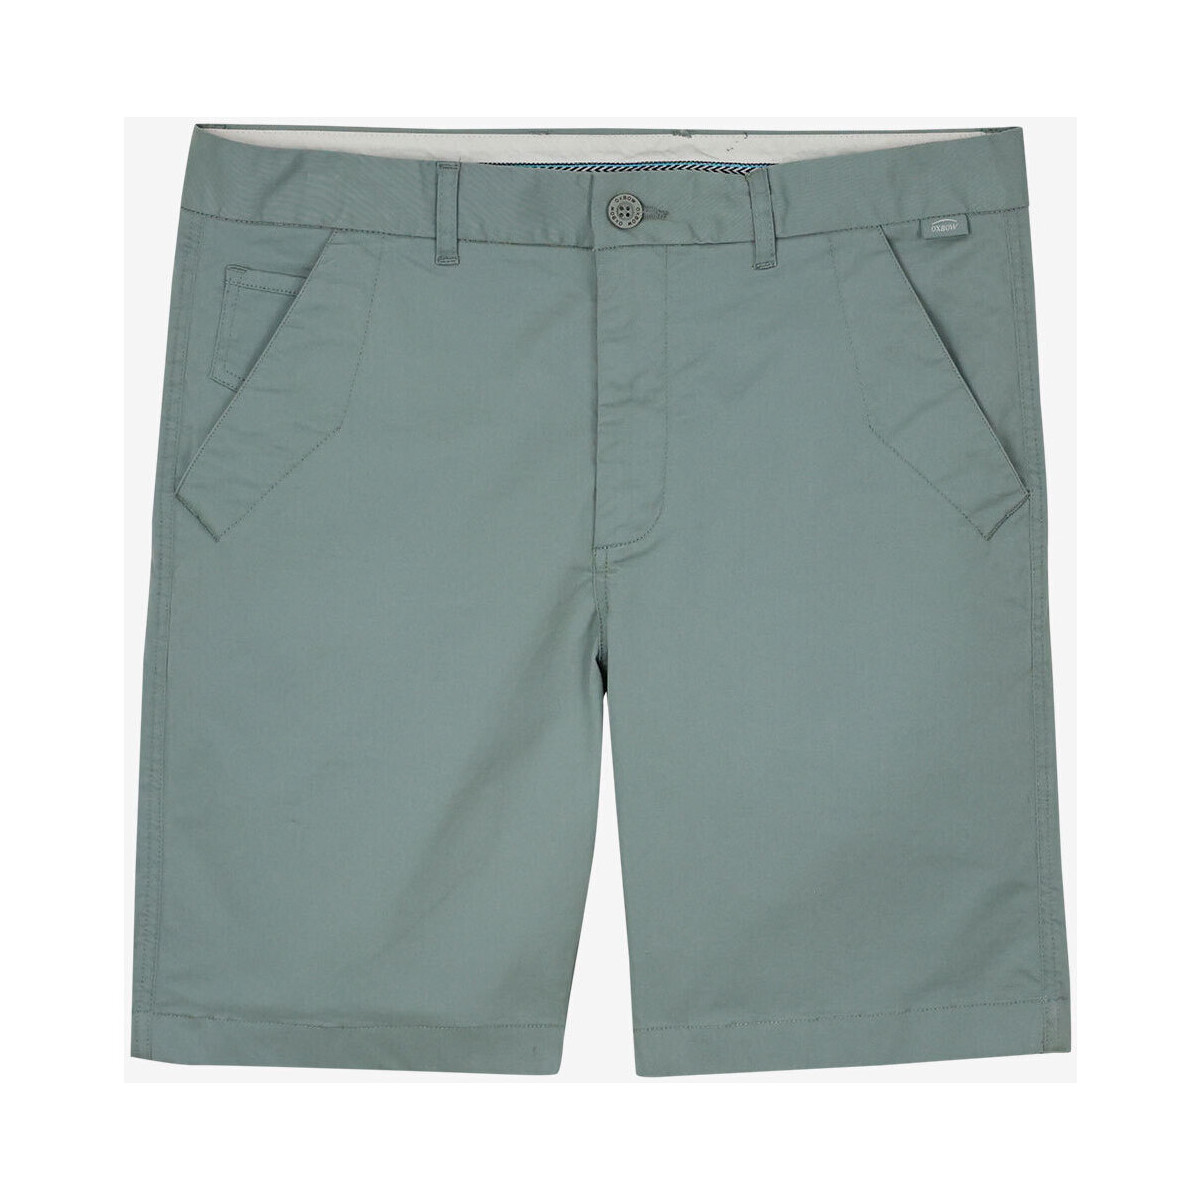 Kleidung Herren Shorts / Bermudas Oxbow Short chino ONAGH Grün